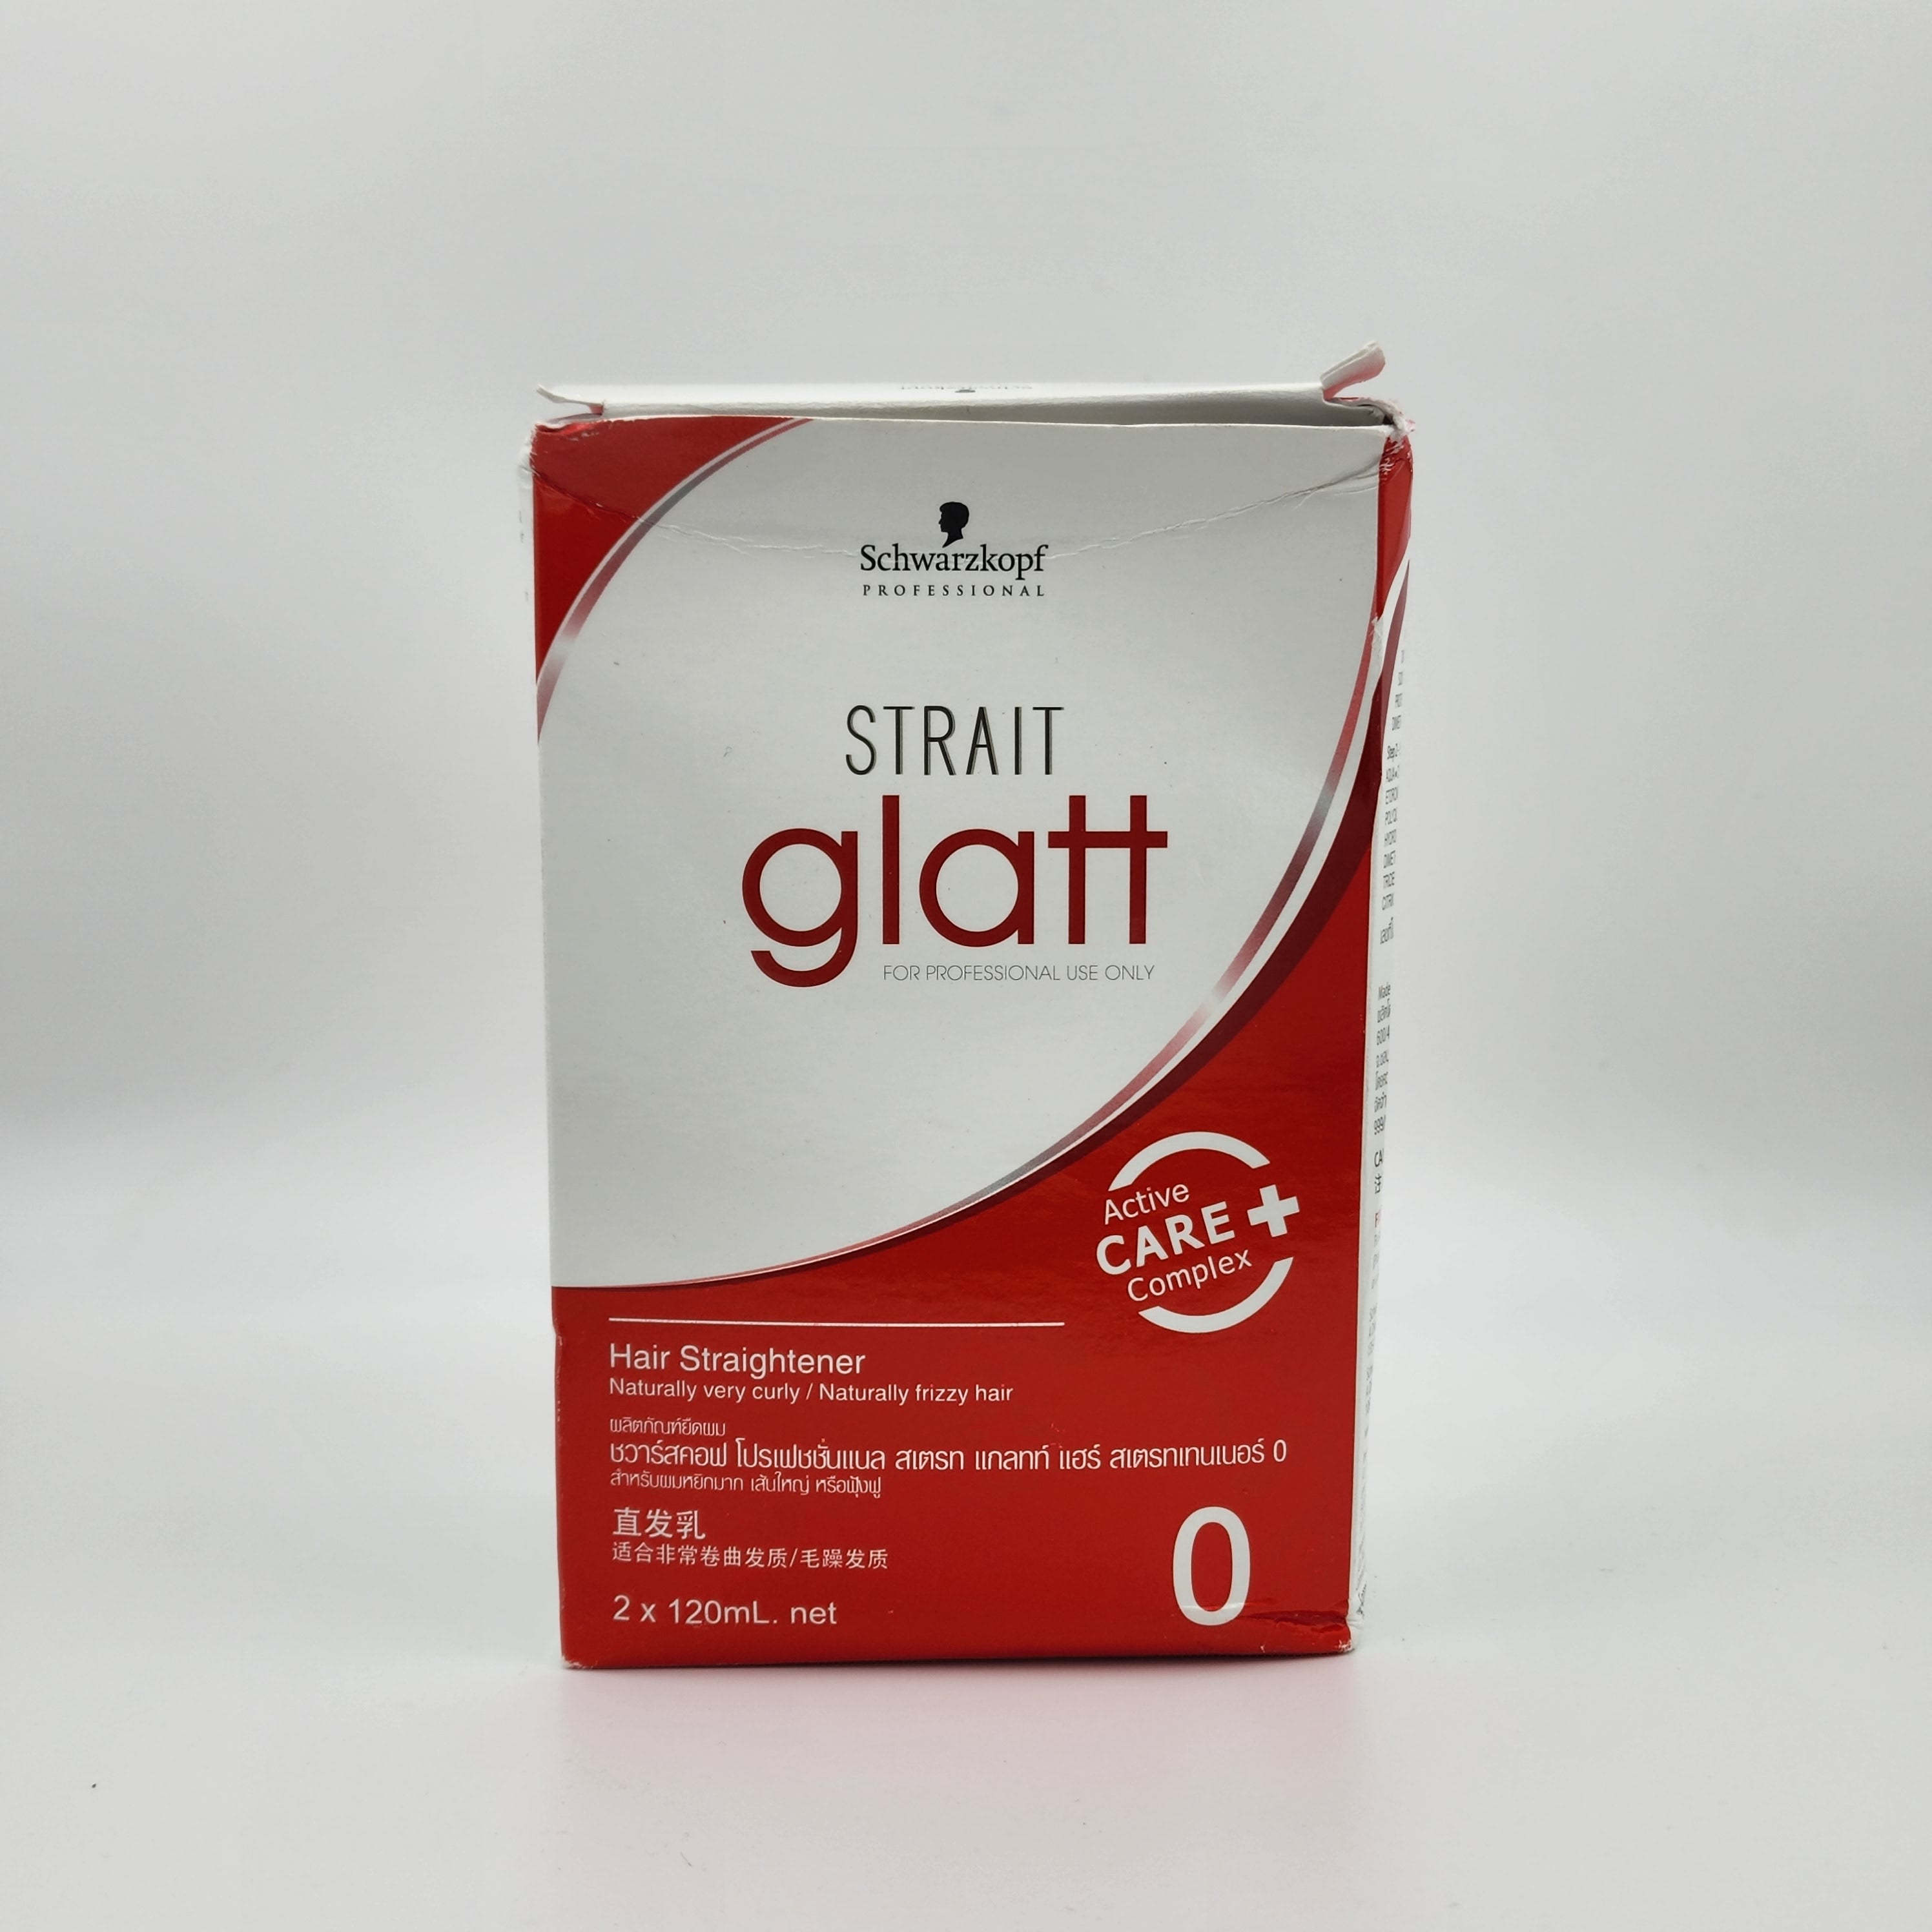 Schwarzkopf Strait Glatt Hair Straightener Cream (2x200ml) Schwarzkopf Professional